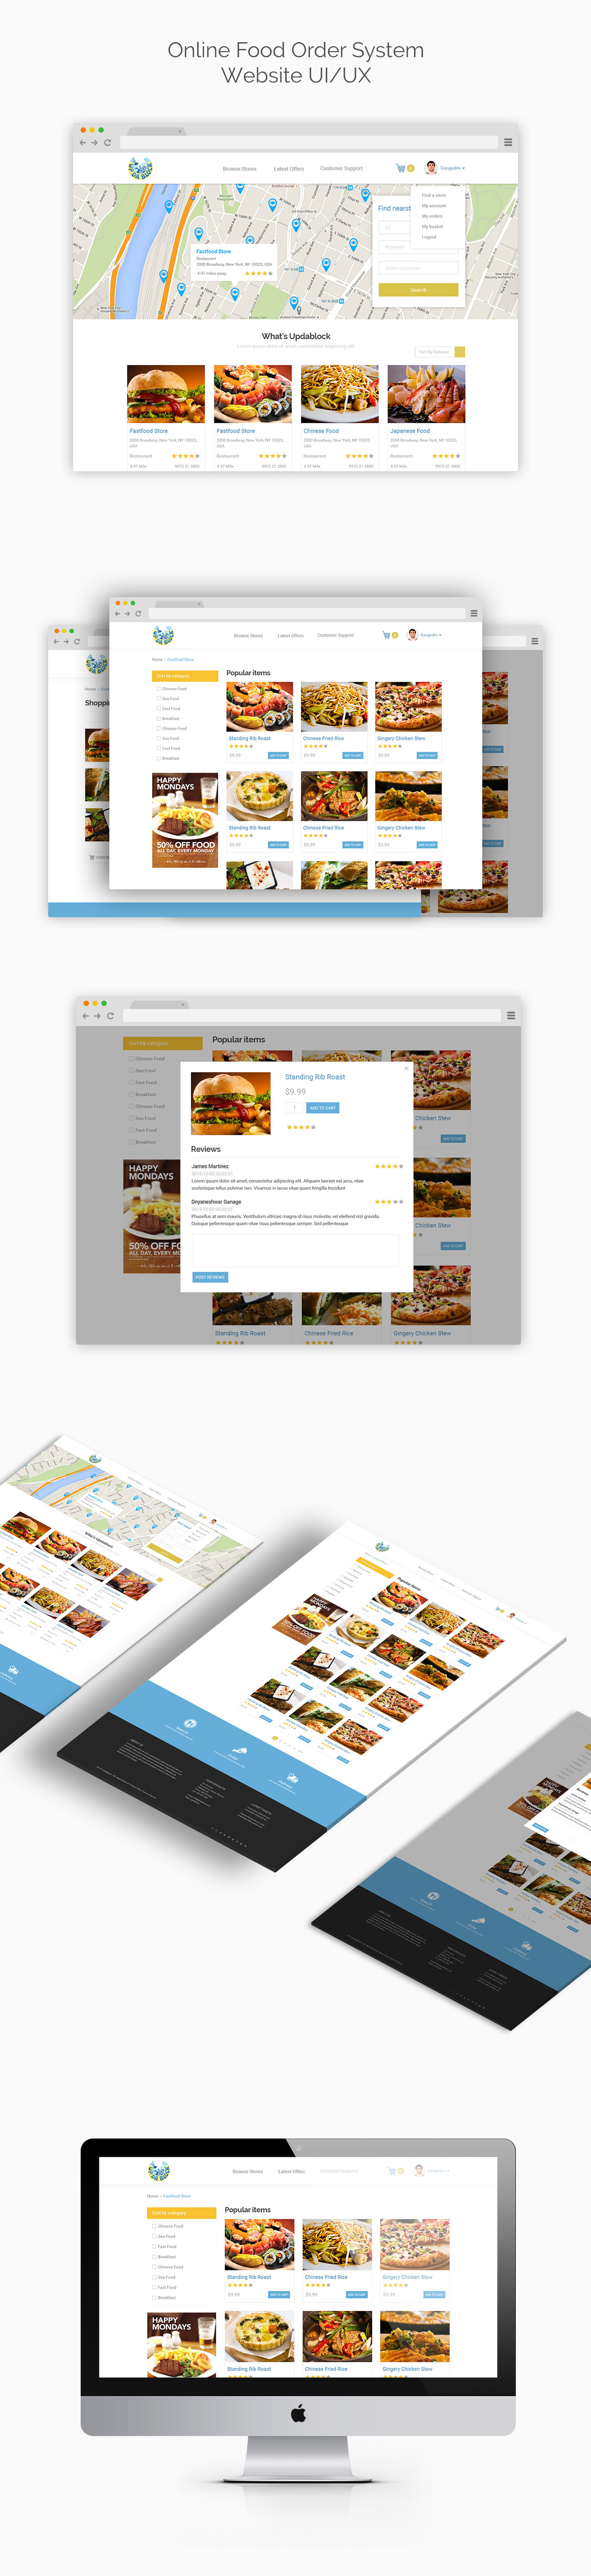 food delivery Website Design online food delivery website redesign